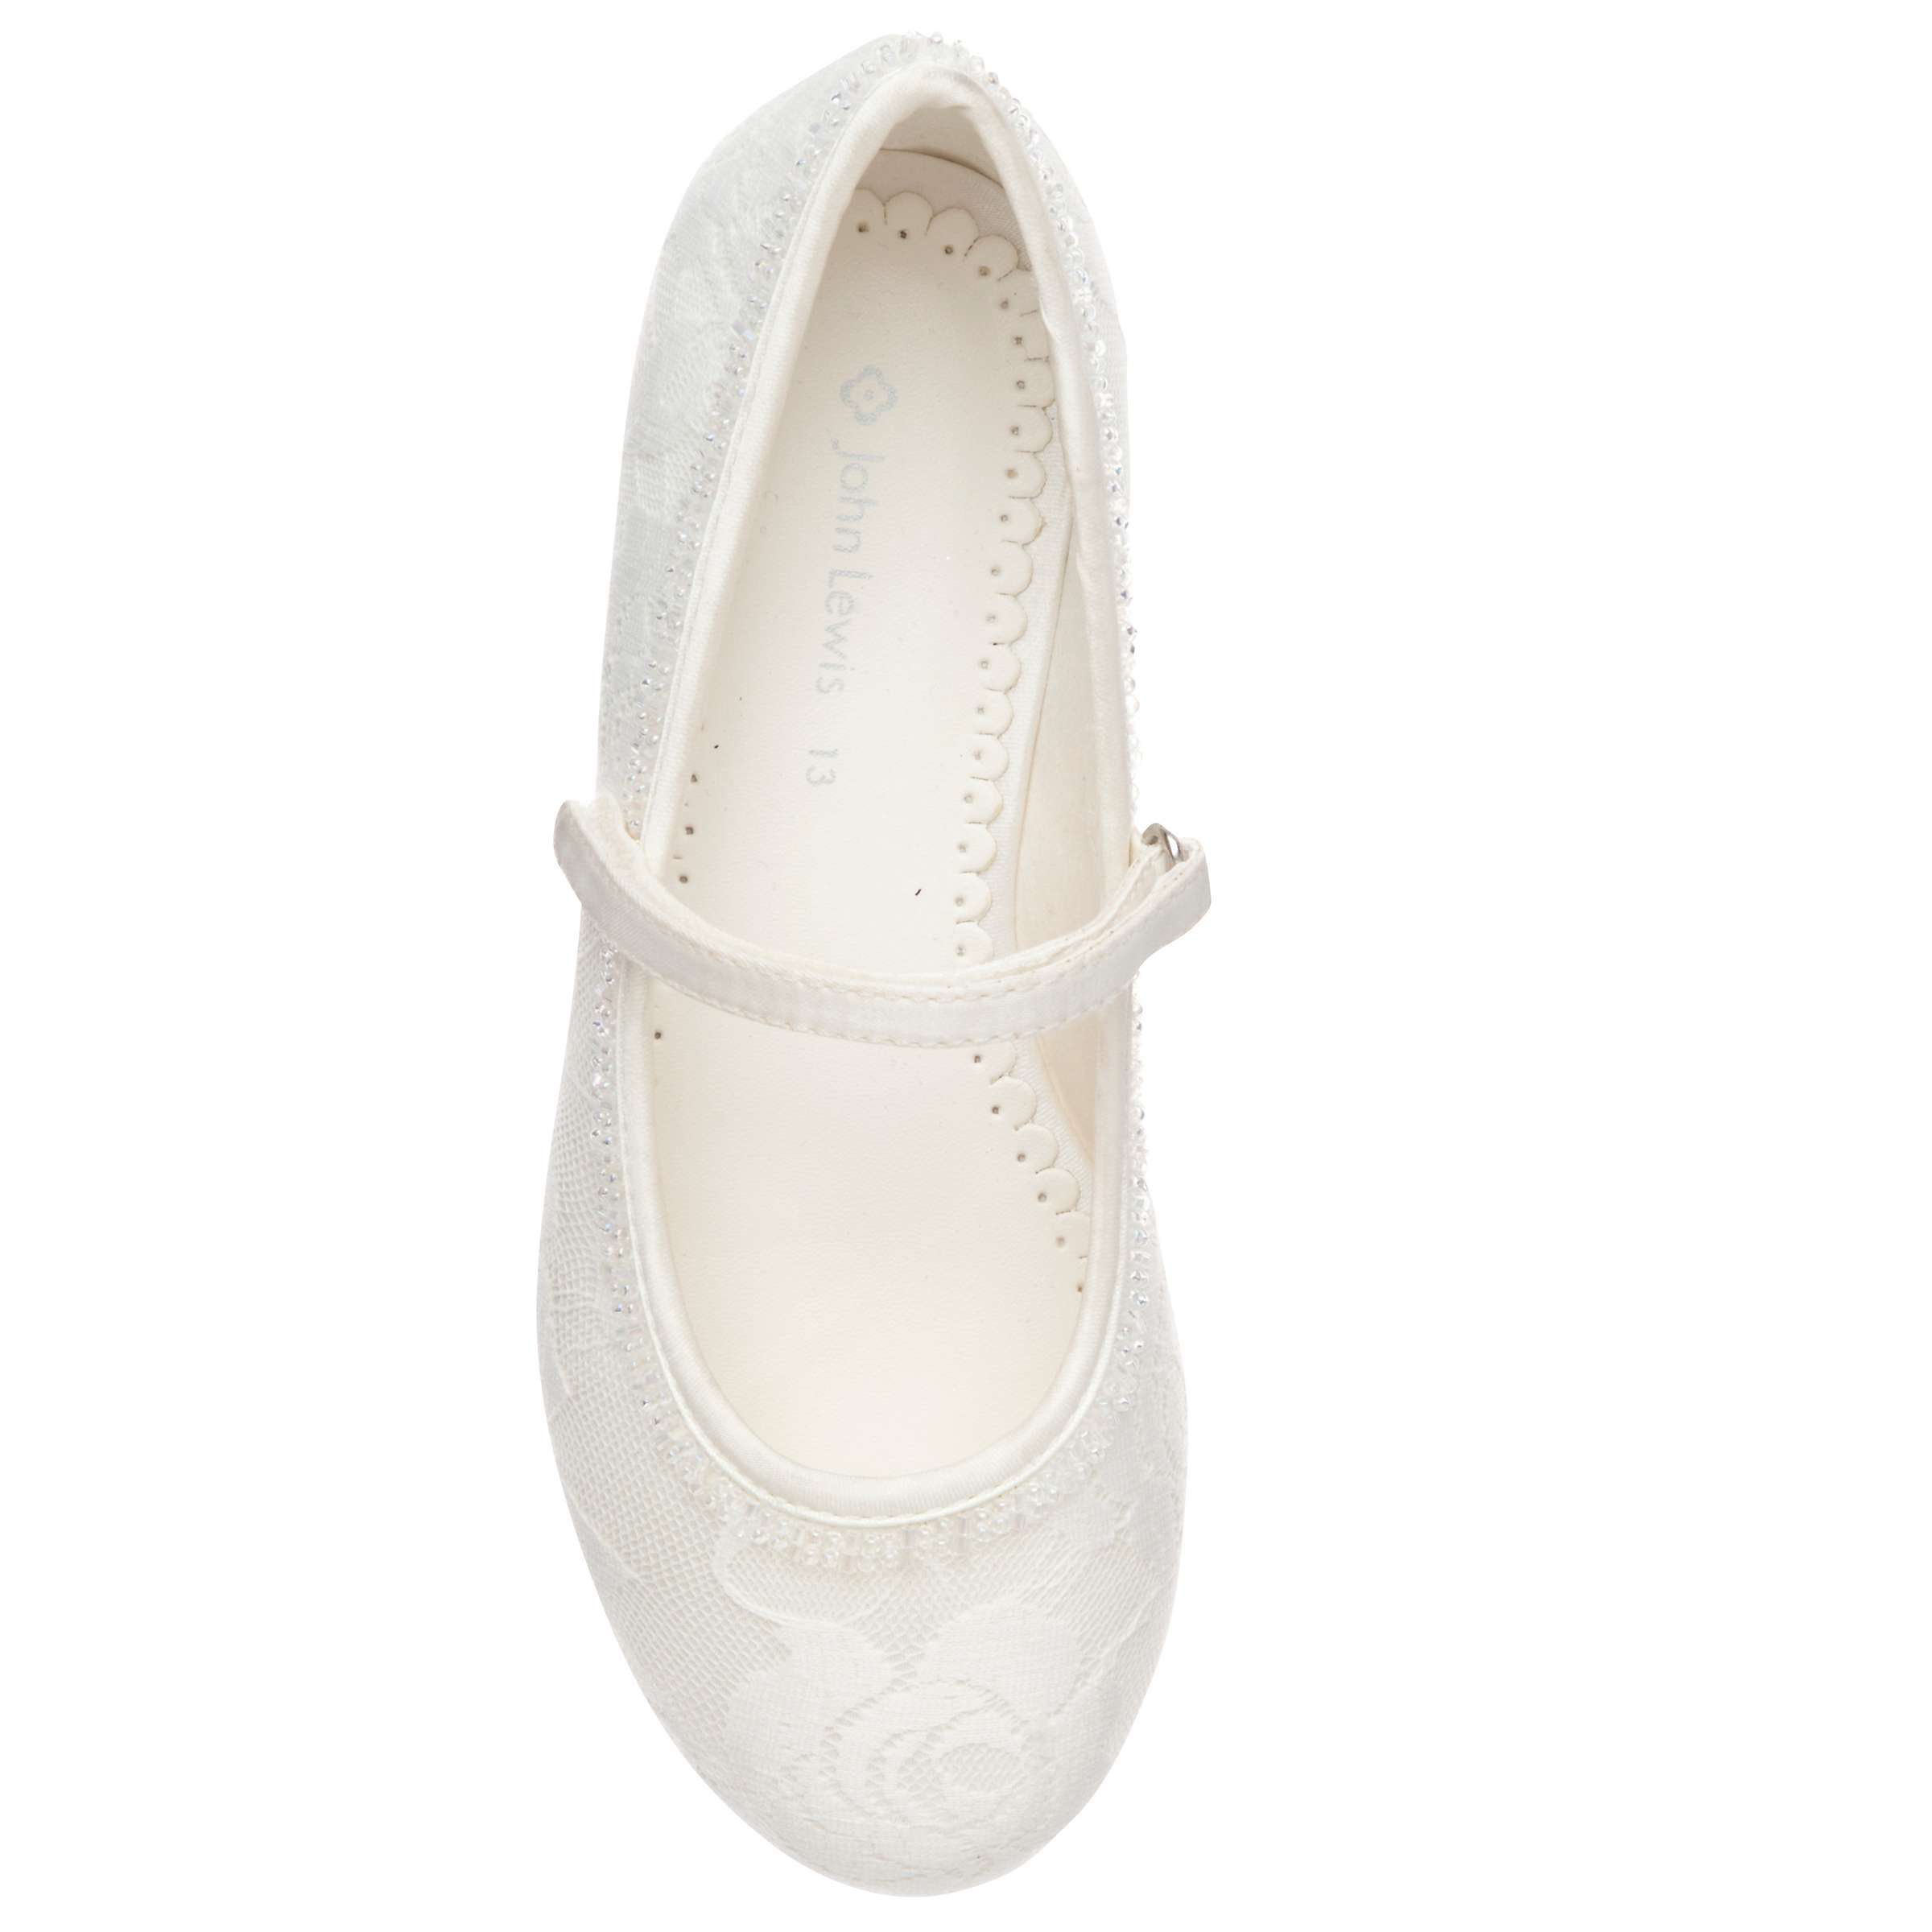 John Lewis Kids' Lace Overlay Bridesmaids' Shoes, Ivory at John Lewis ...